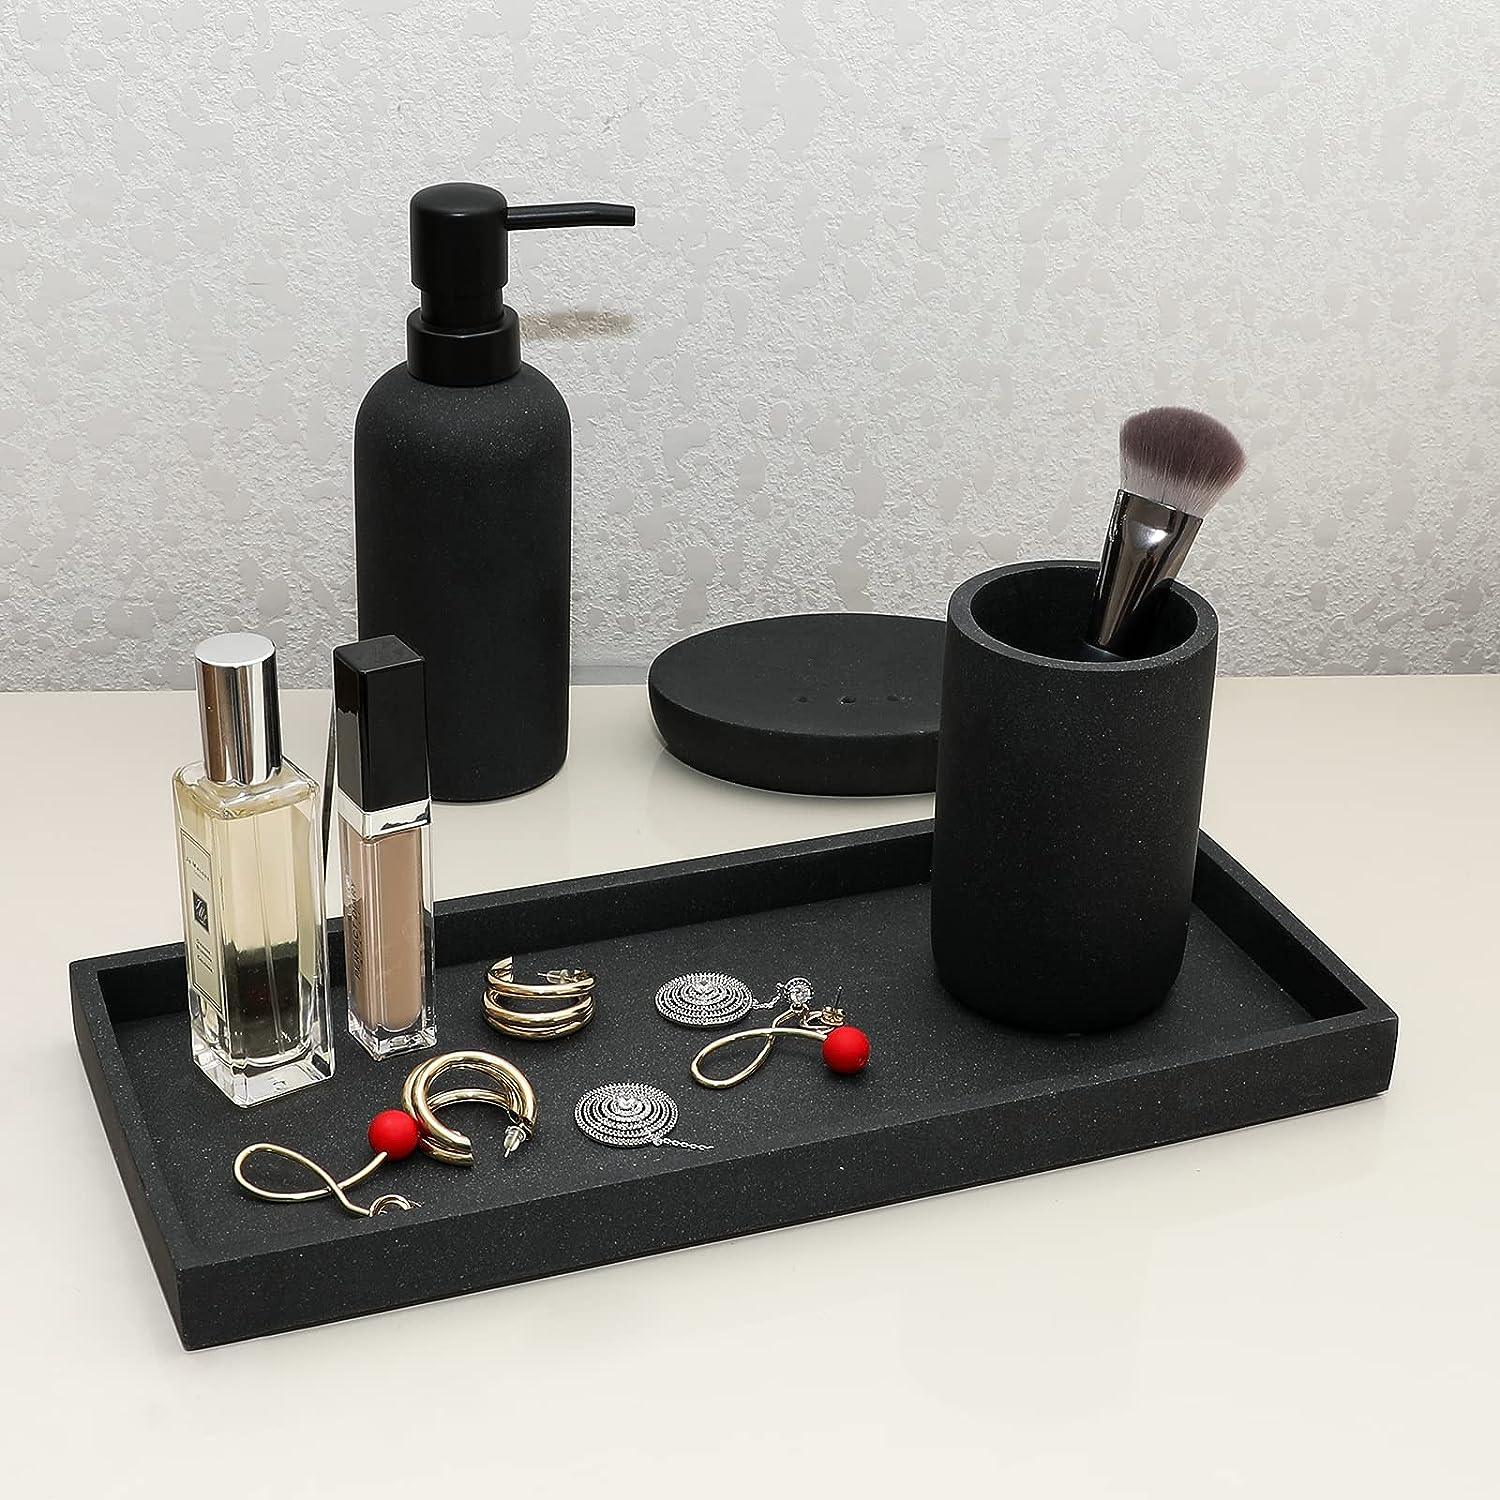 TAUVLL Juego de accesorios de baño, 4 piezas completo de resina para encimera - VIRTUAL MUEBLES